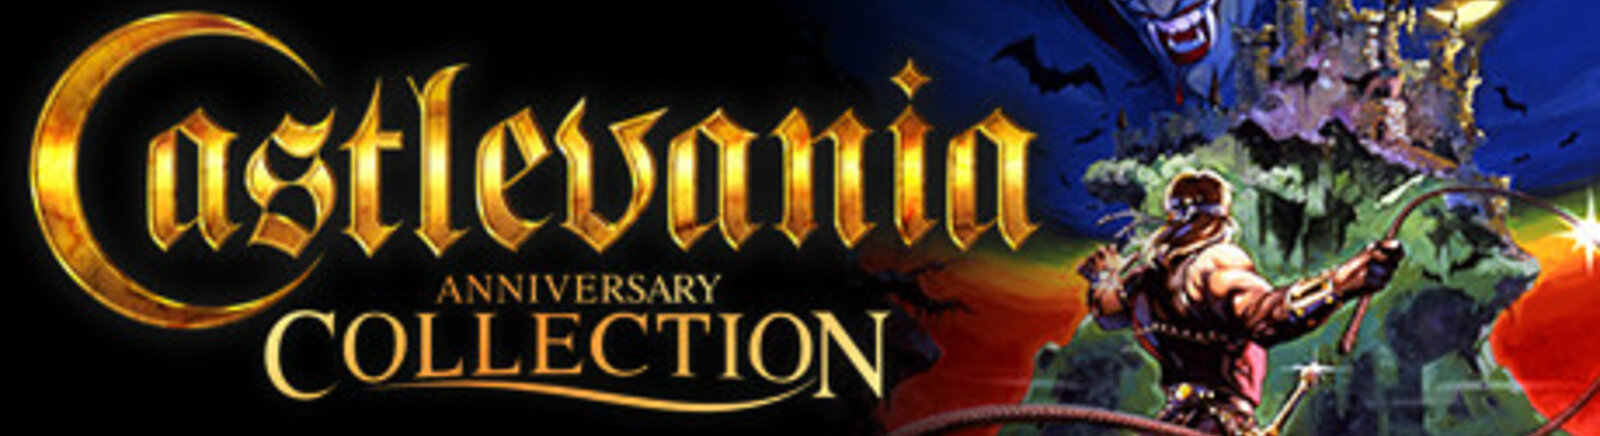 Дата выхода Castlevania (1999) (Castlevania 64)  на Nintendo 64 в России и во всем мире